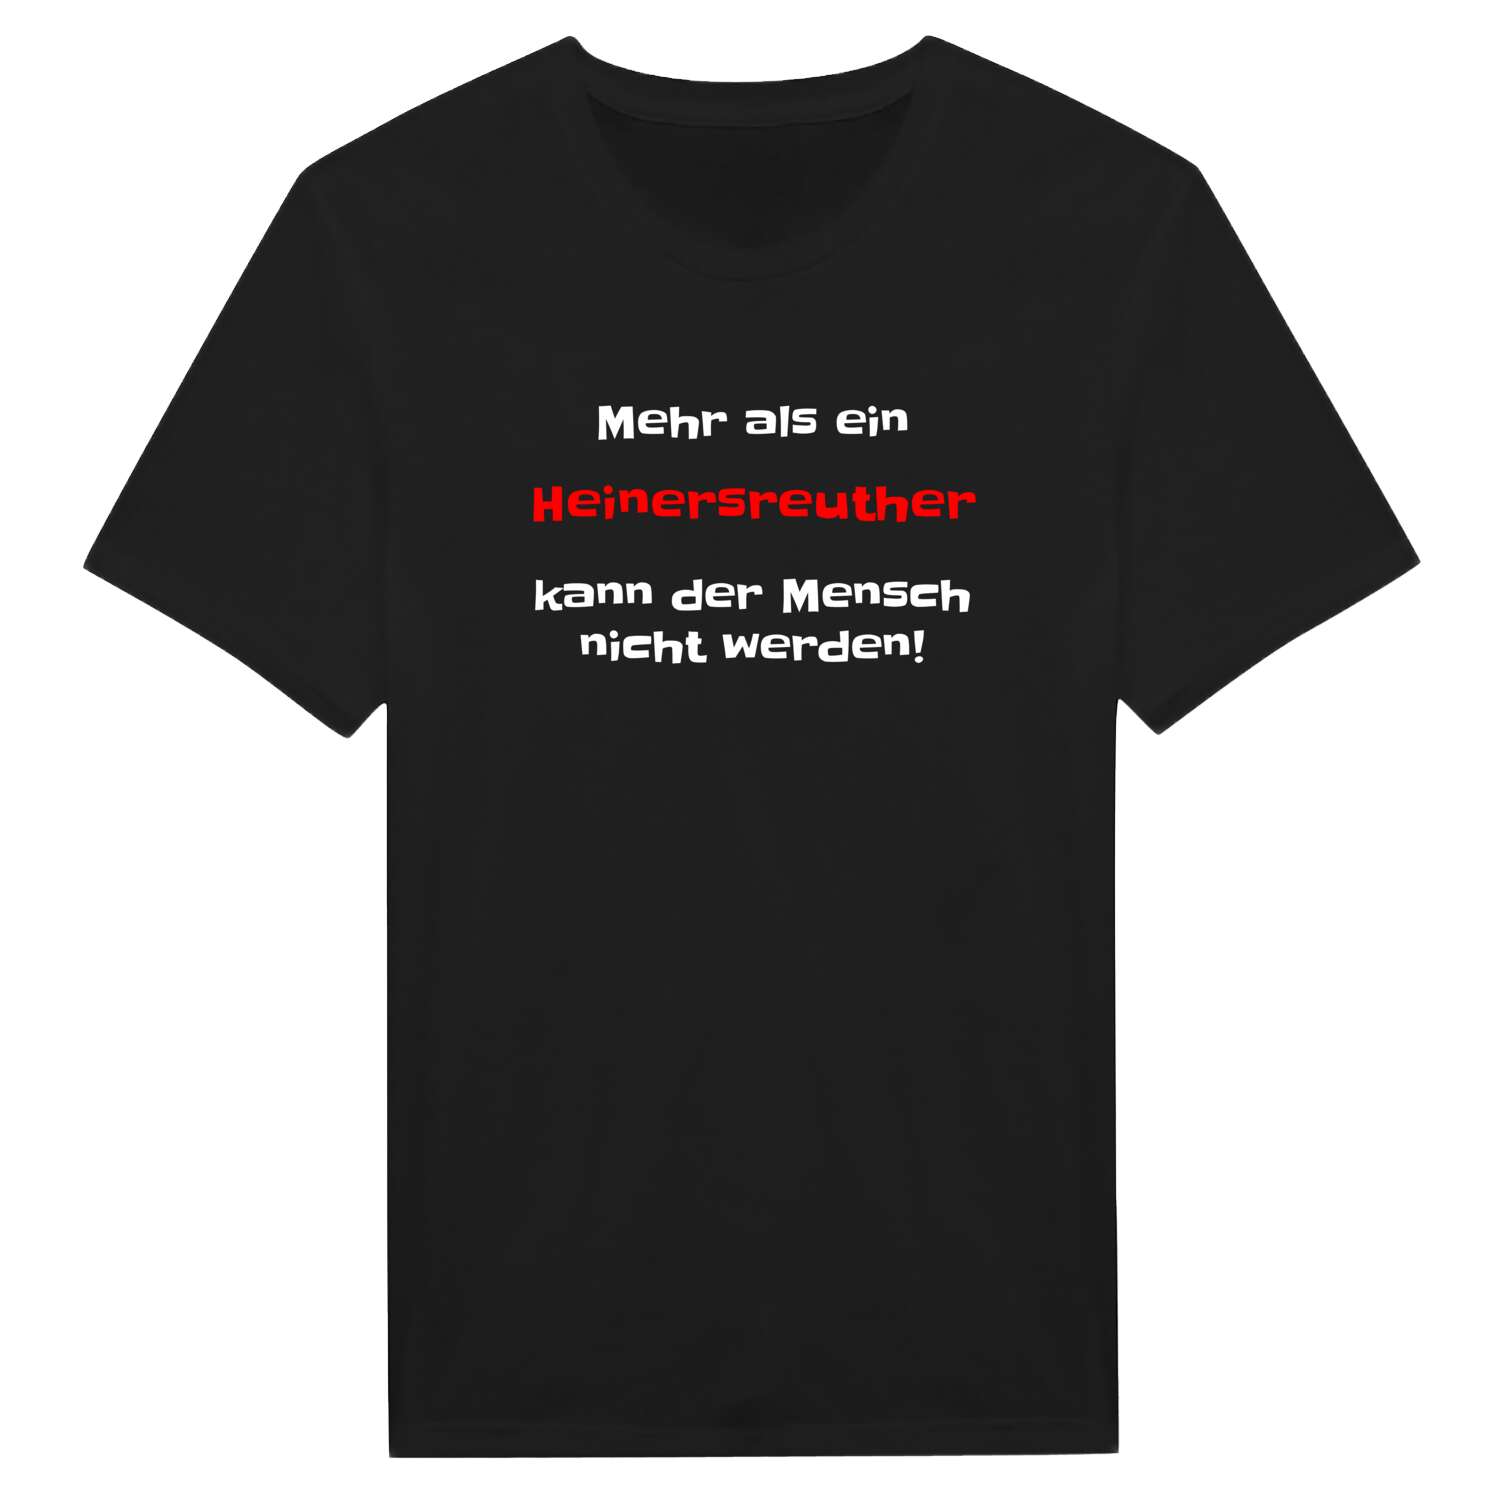 Heinersreuth T-Shirt »Mehr als ein«